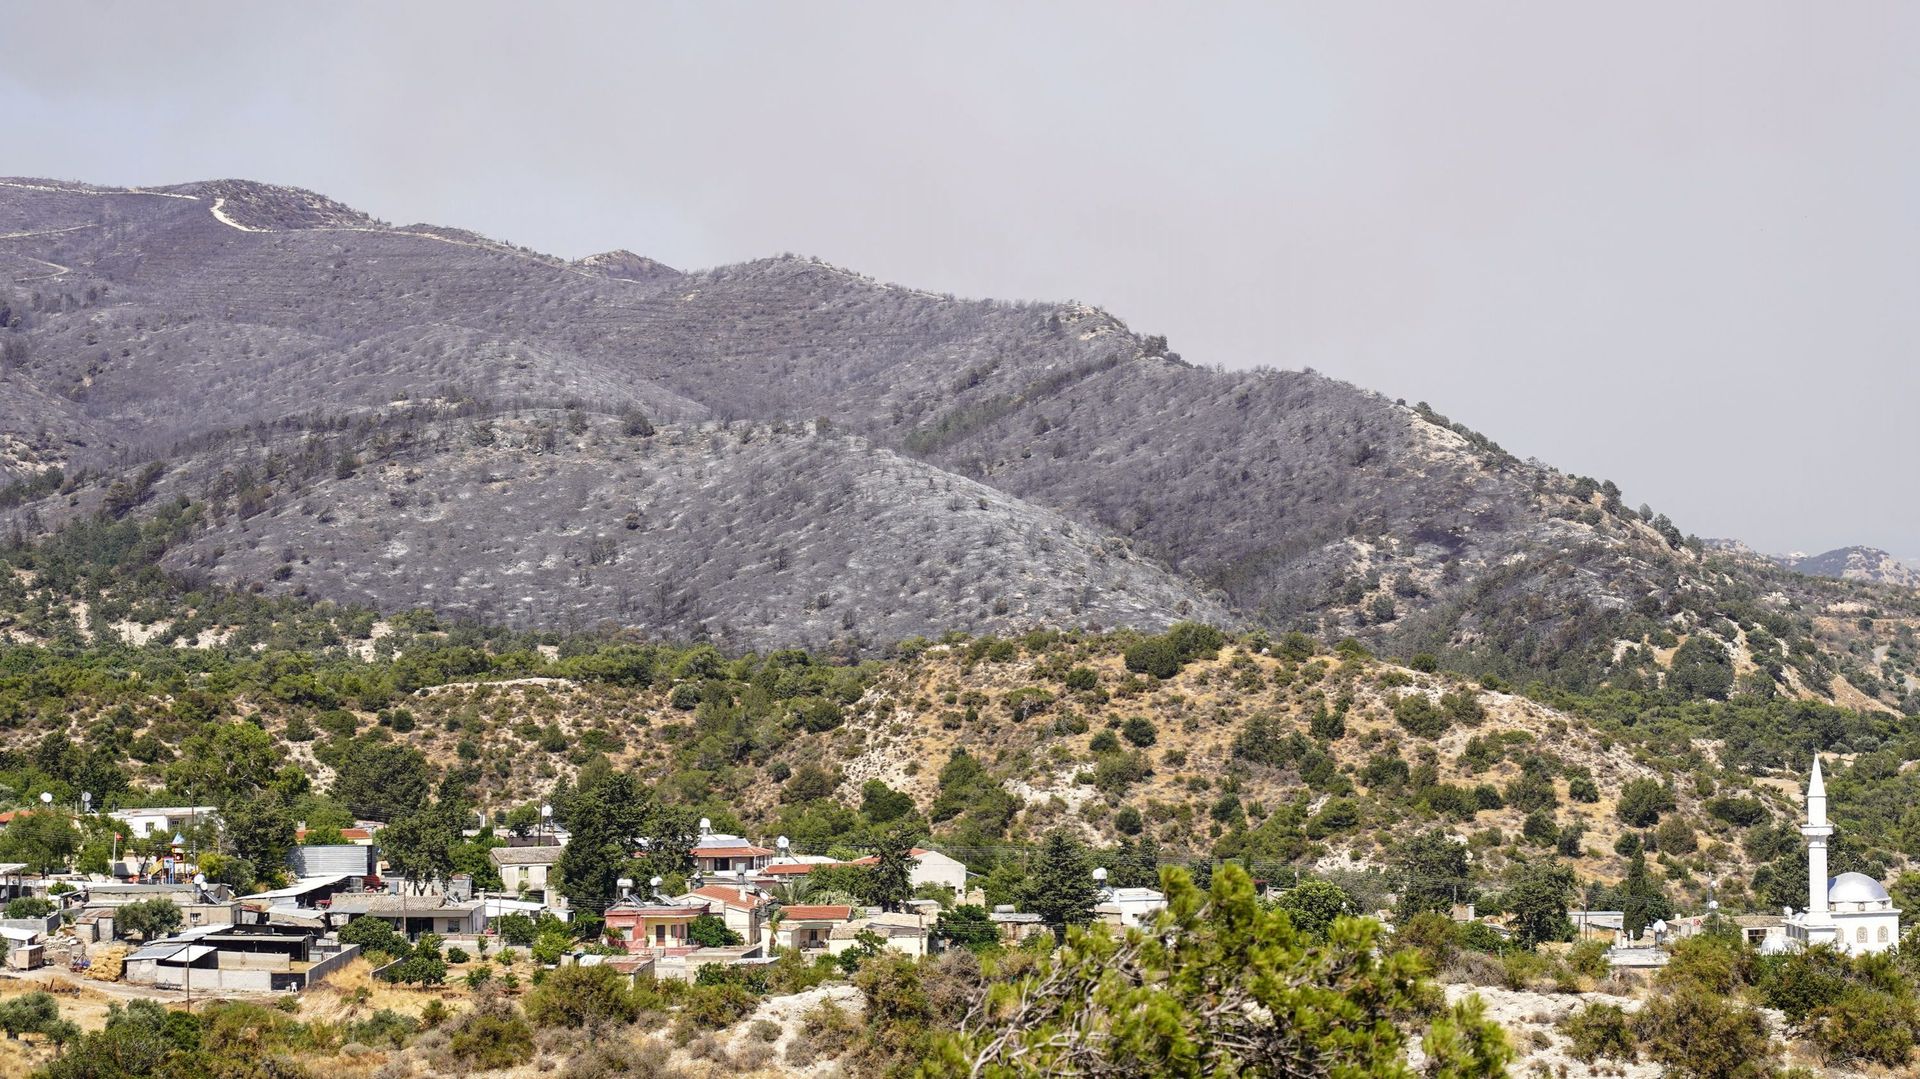 Des arbres carbonisés sont photographiés au-dessus d’un village, suite à des feux de forêt sur les pentes des montagnes de Kyrenia dans le nord de Chypre, le 23 juin 2022. Des avions de lutte contre les incendies des deux côtés de Chypre divisée ont été r